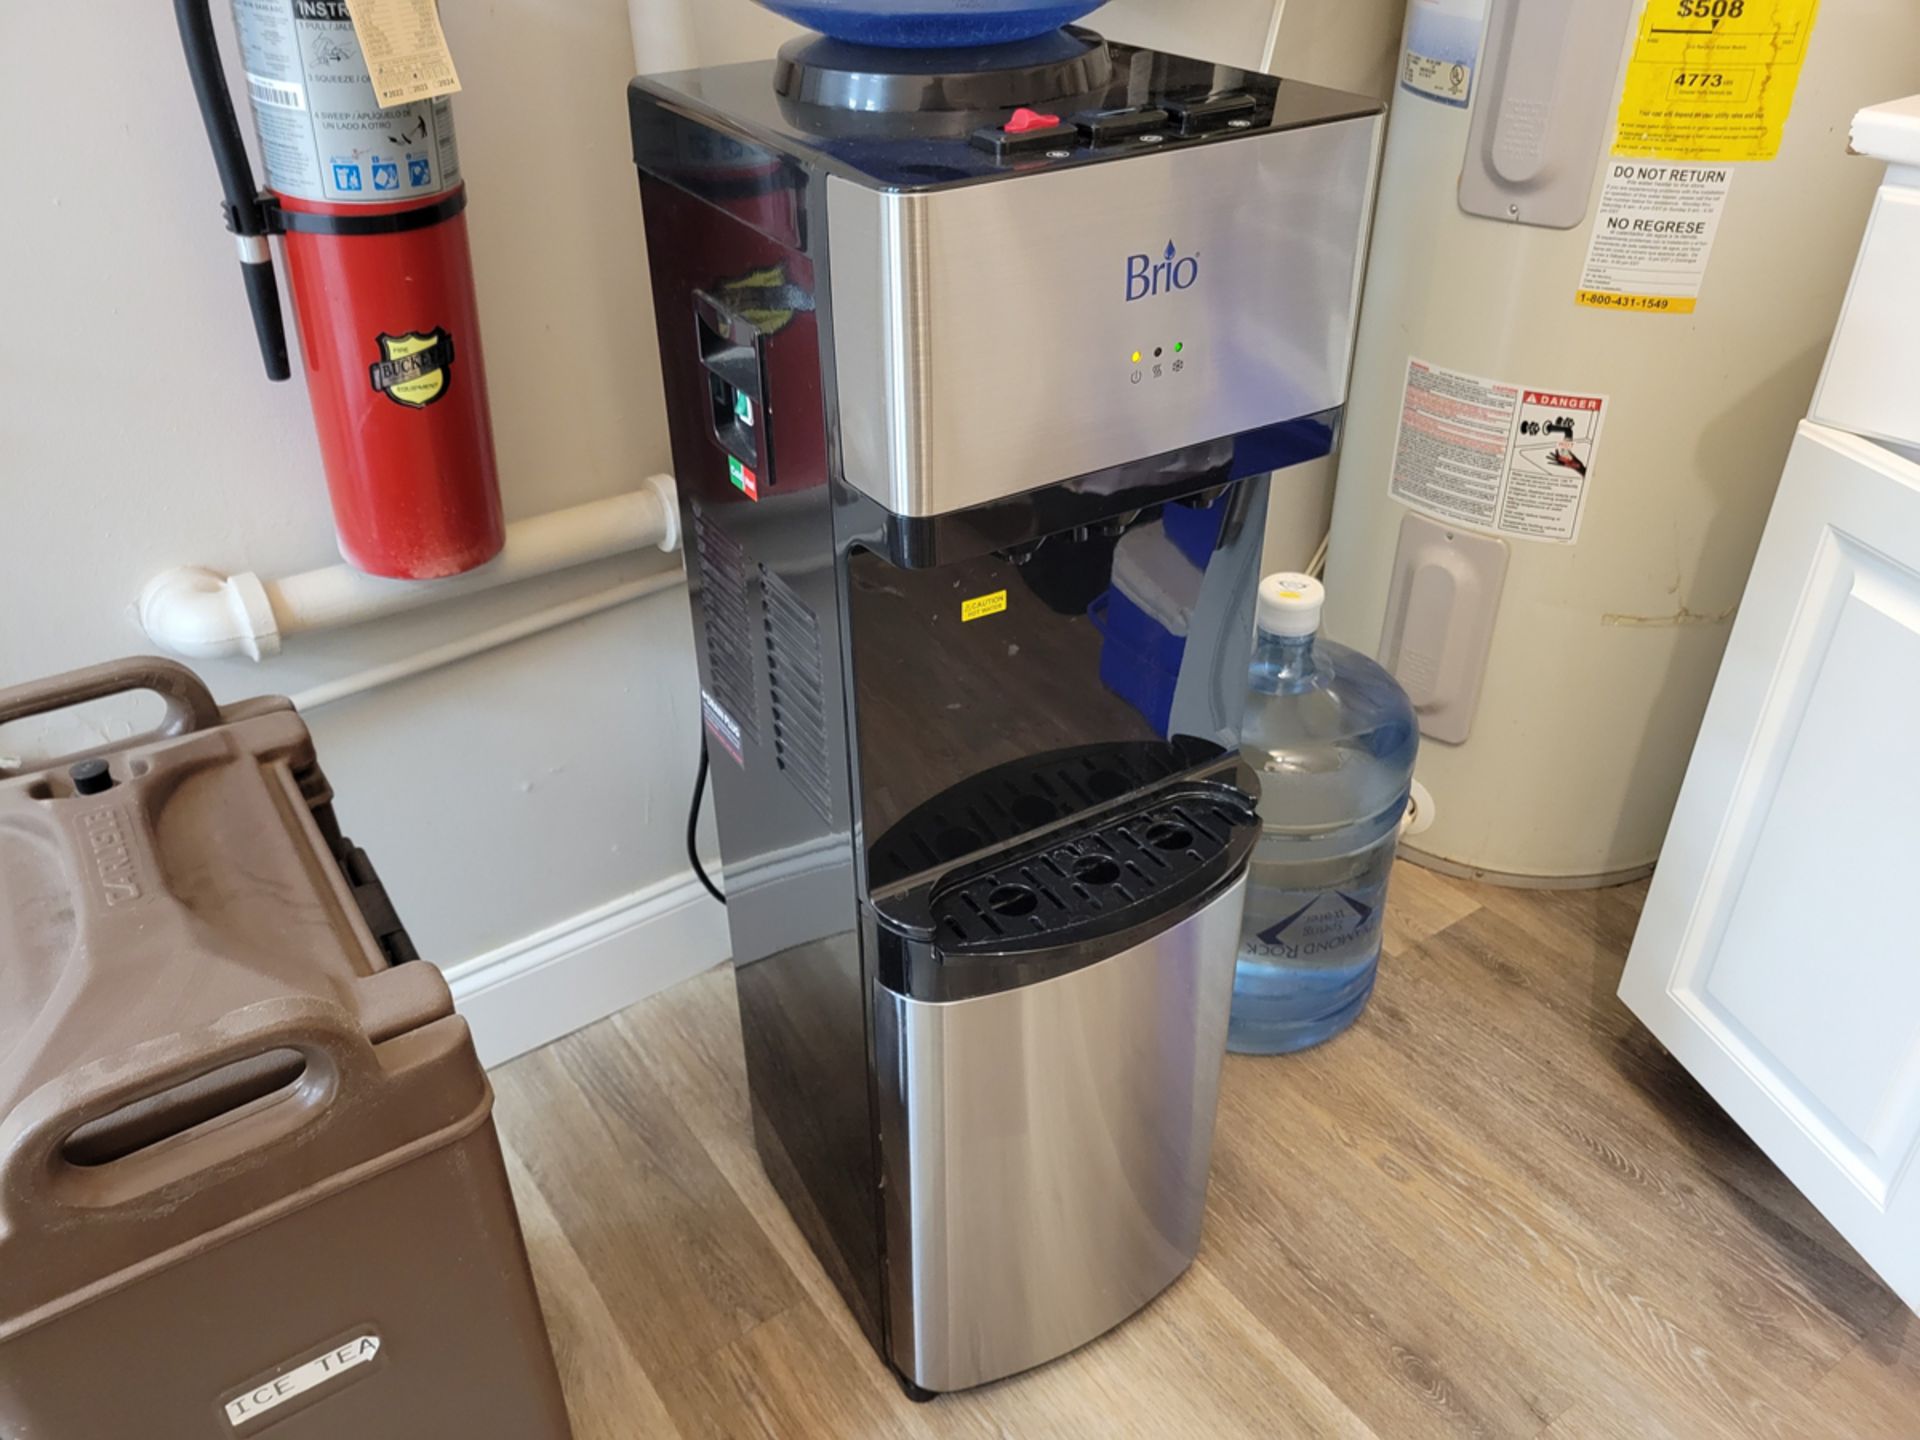 Brio Model CLTL520 Water Dispenser